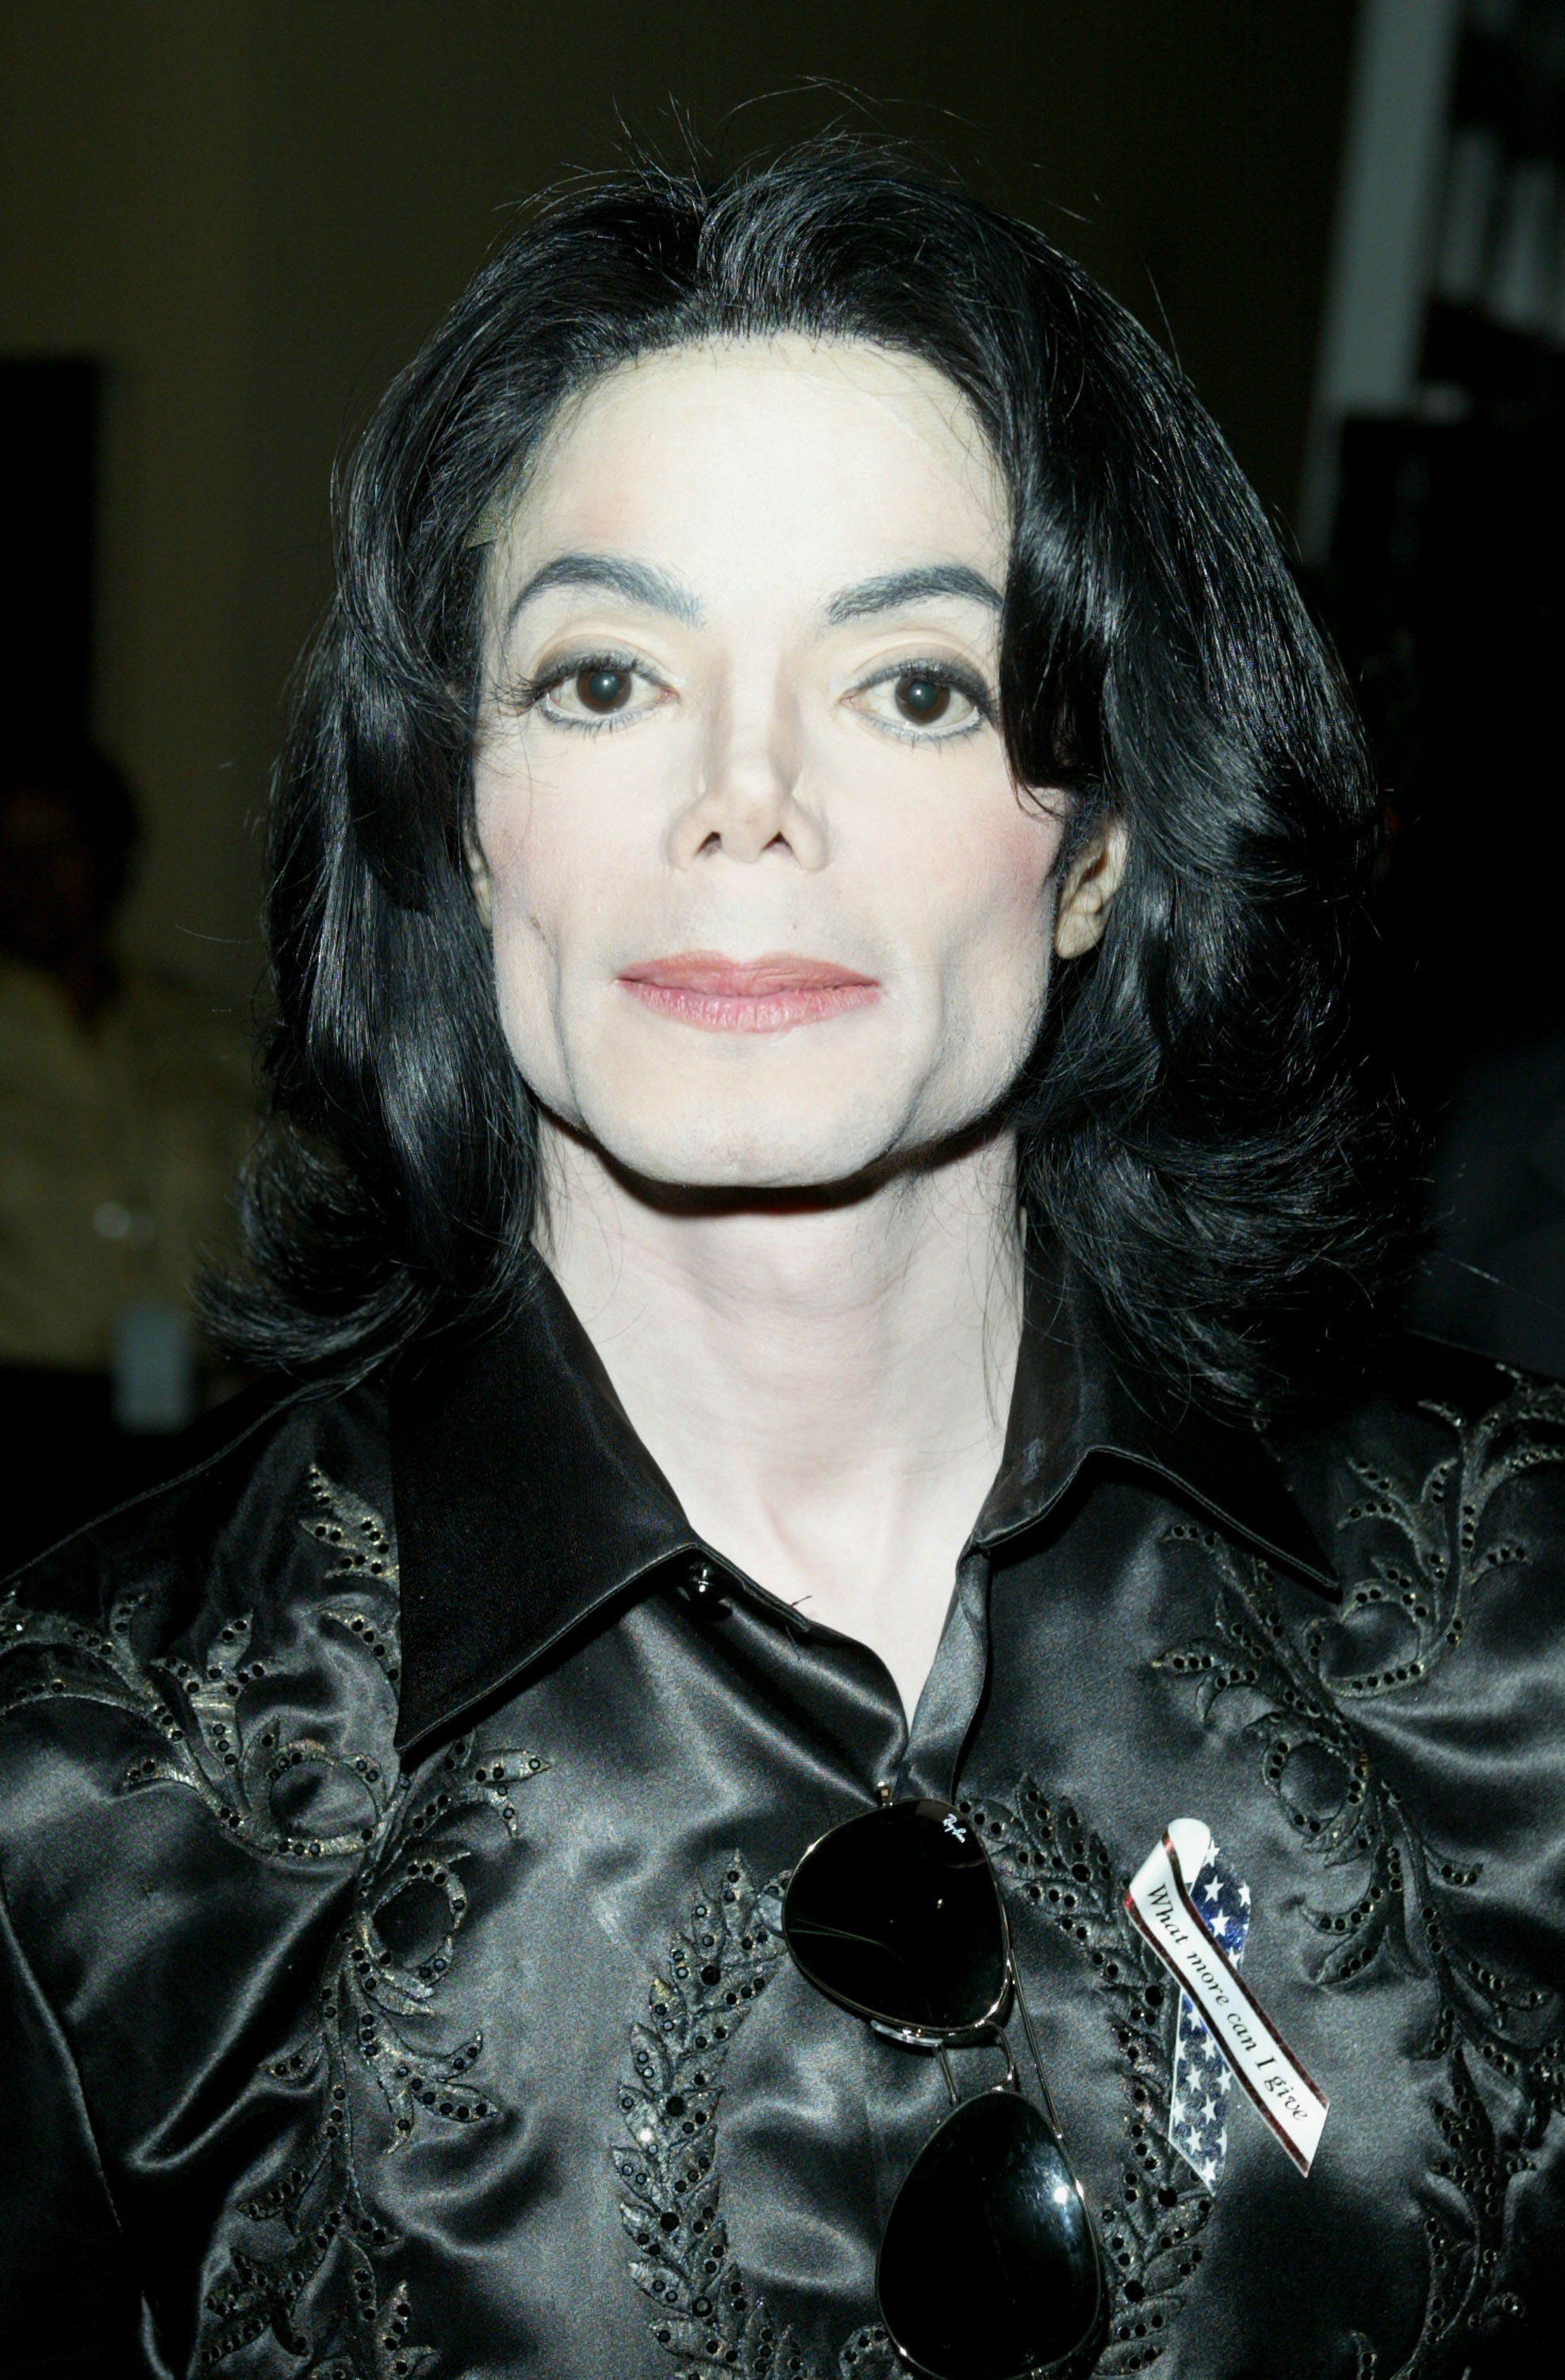 Michael Jackson aux Radio Music Awards 2003 le 27 octobre 2003 à Las Vegas, Nevada. | Source : Getty Images